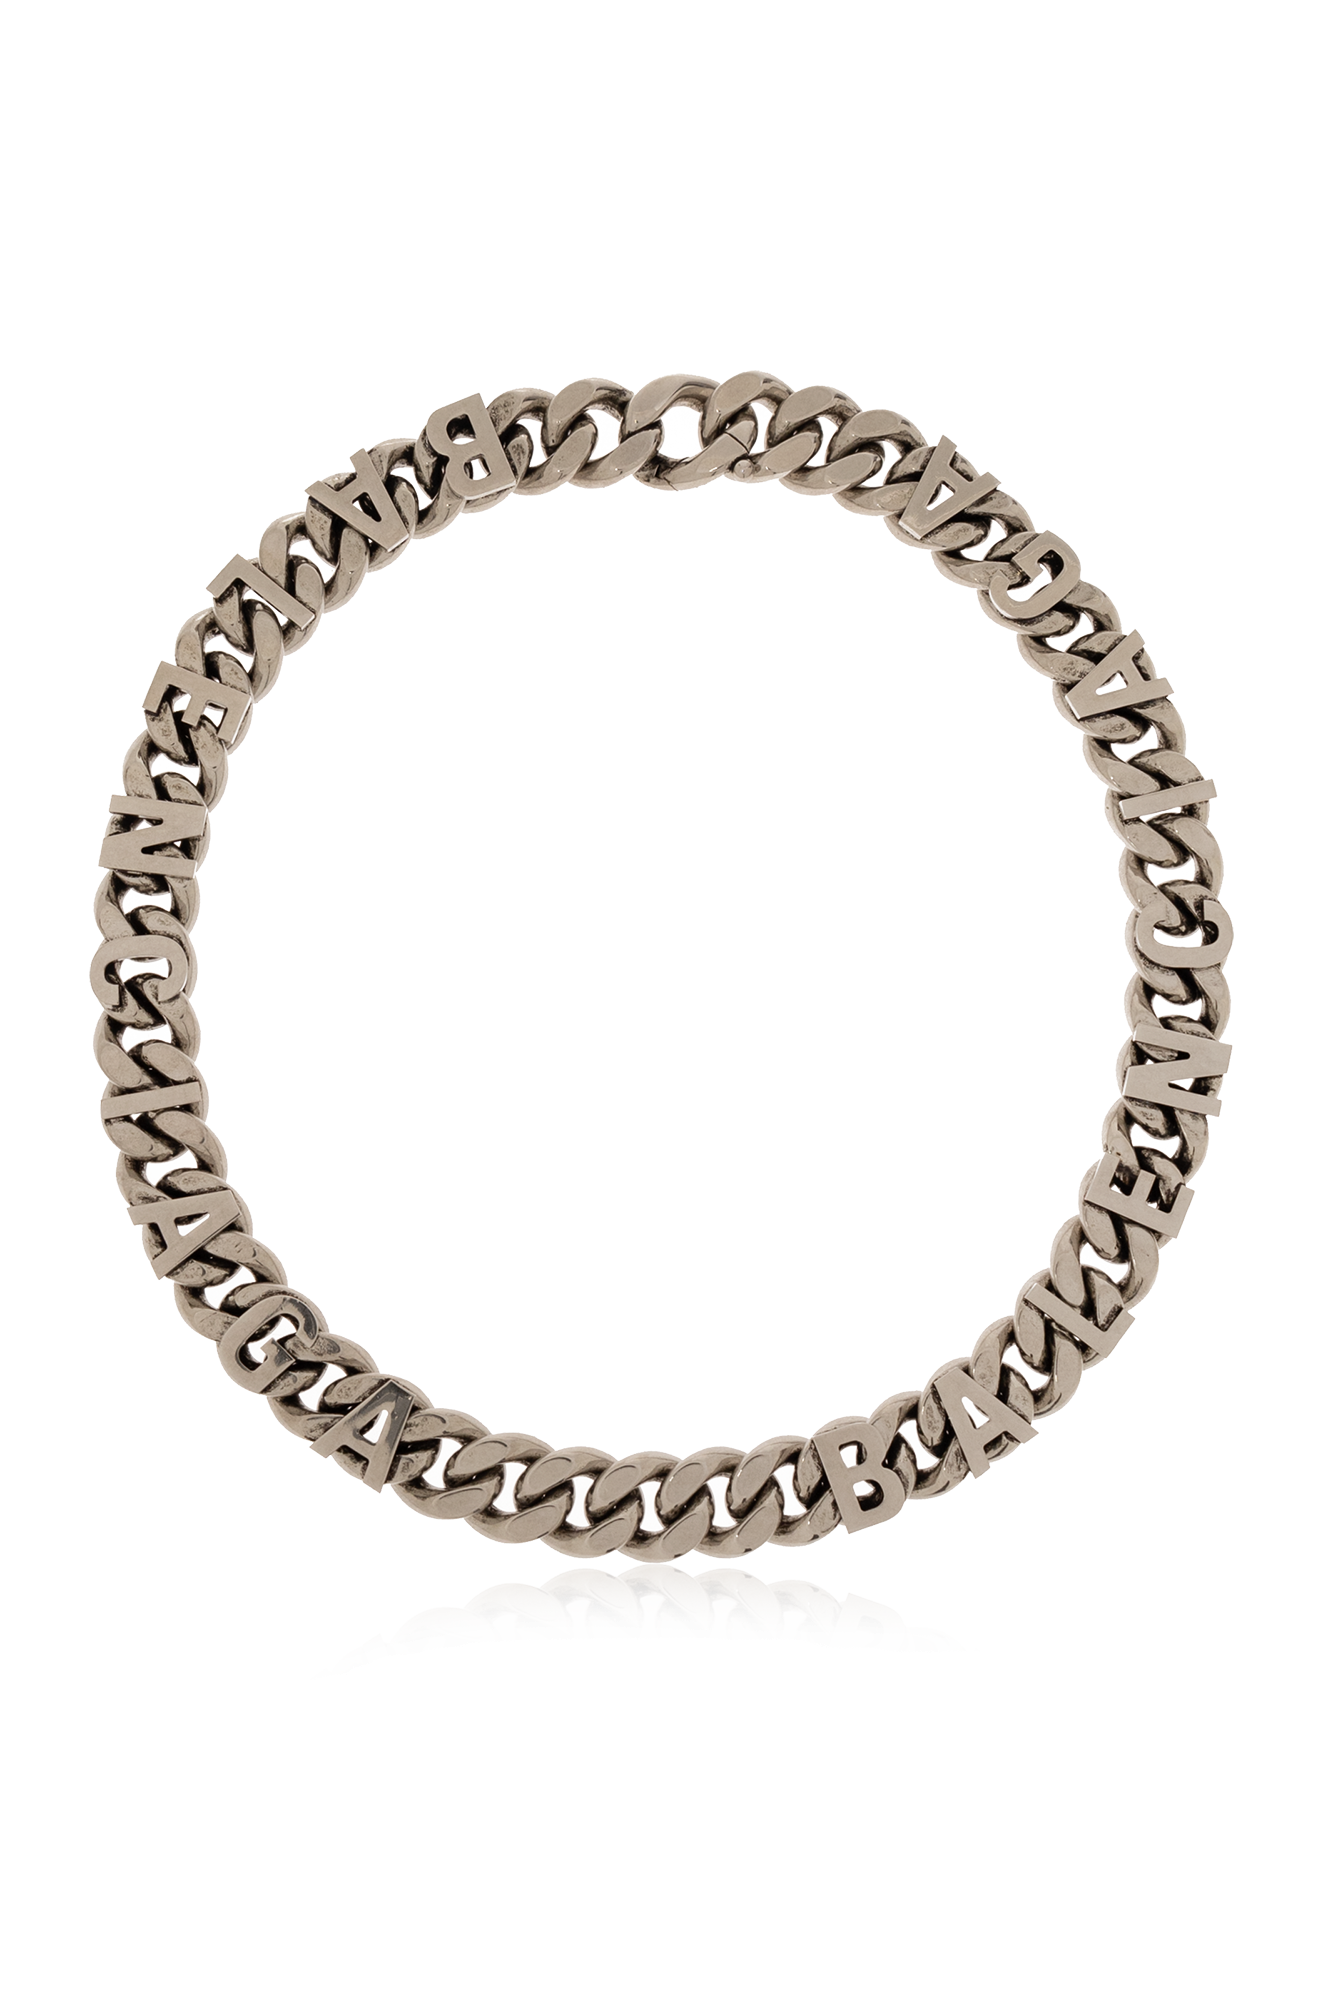 Balenciaga Brass necklace with logo